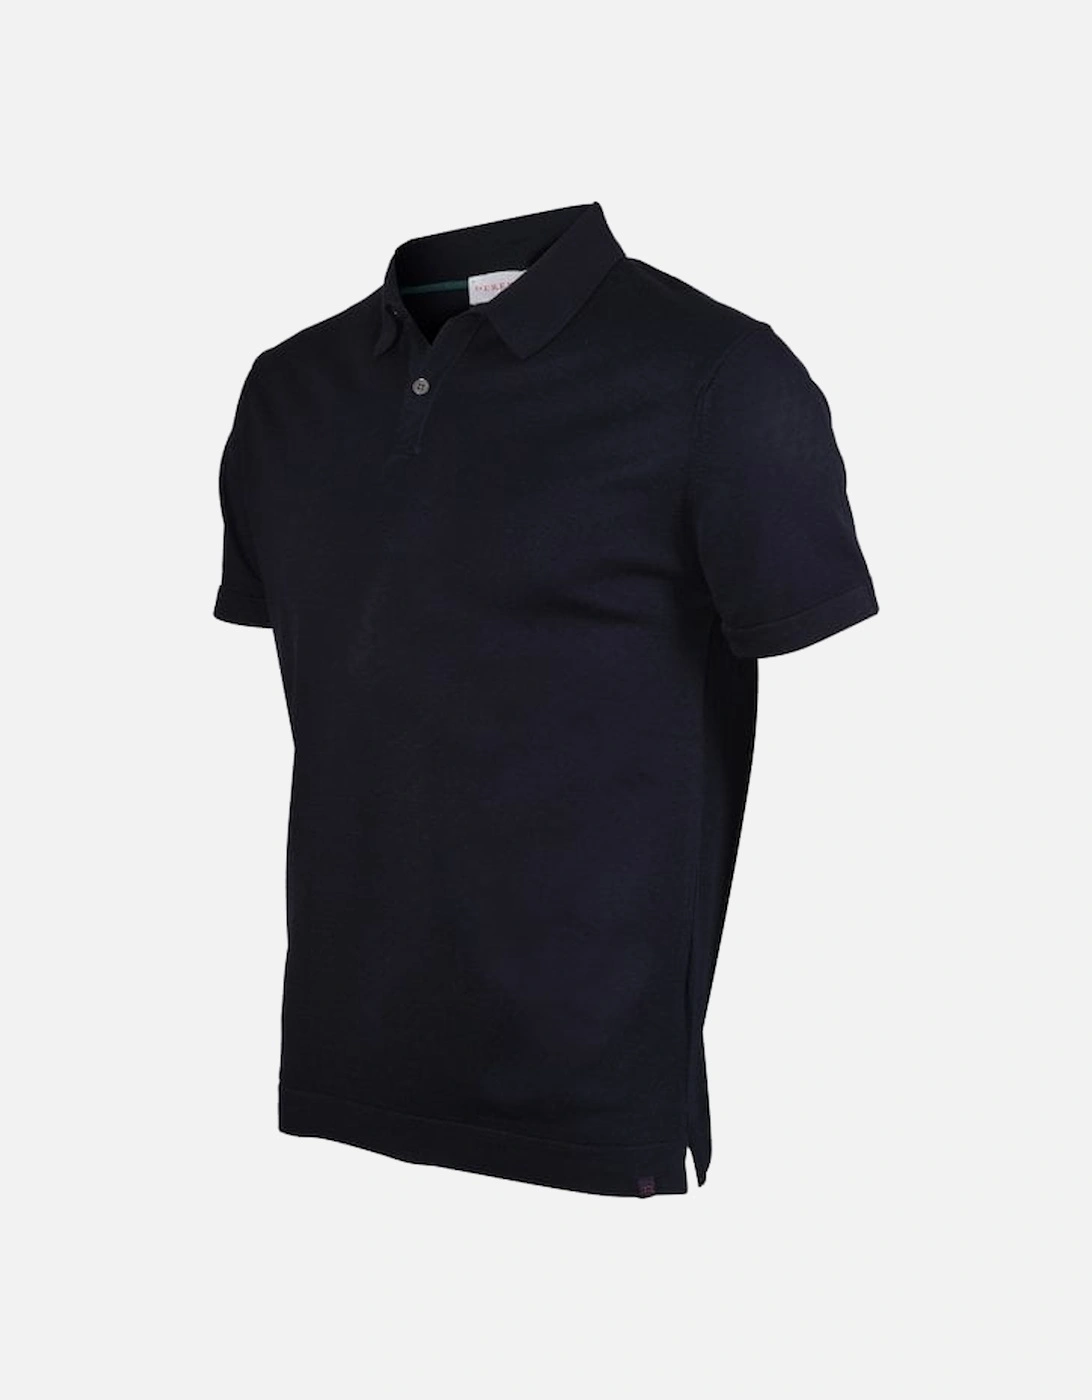 Sea Island Cotton Polo Shirt, Navy